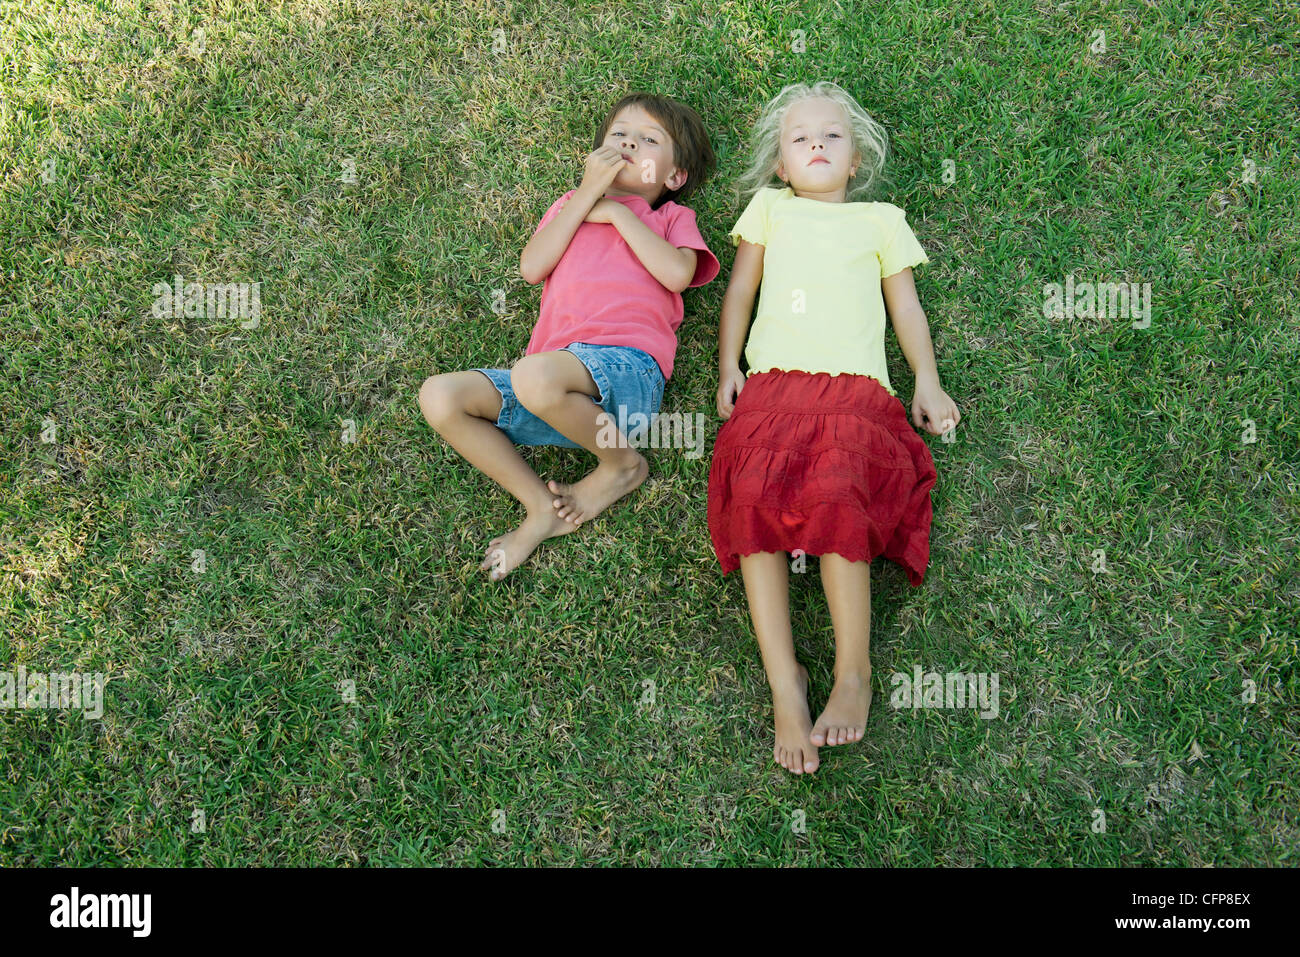 Los niños yaciendo juntos sobre el césped, mirando a la cámara Foto de stock